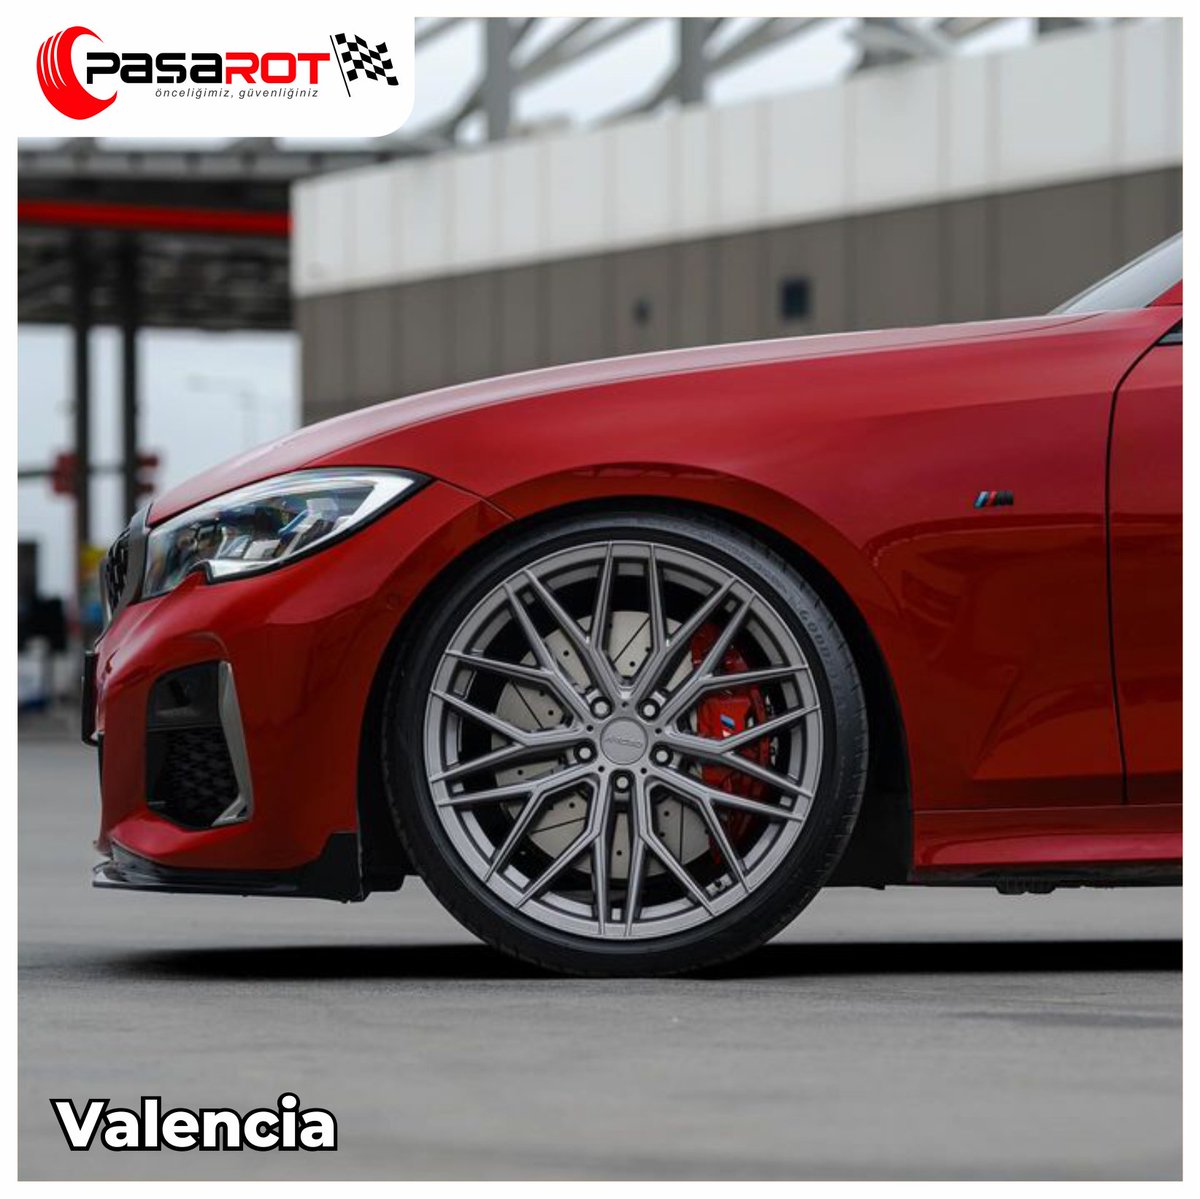 Asfaltta daha çarpıcı olmak her zaman mümkün! Valencia 20 inç boyutu ile yollarda!

☎️0232 328 35 45
🌍pasarot.com.tr
#paşarot #jant #Lastik #araba #stil #style #car #auto #otolastik #wheels #Jant #AraçBakımı #CheckUp #AraçServis #ArceoWheels #ArceoValencia @arceo_wheels